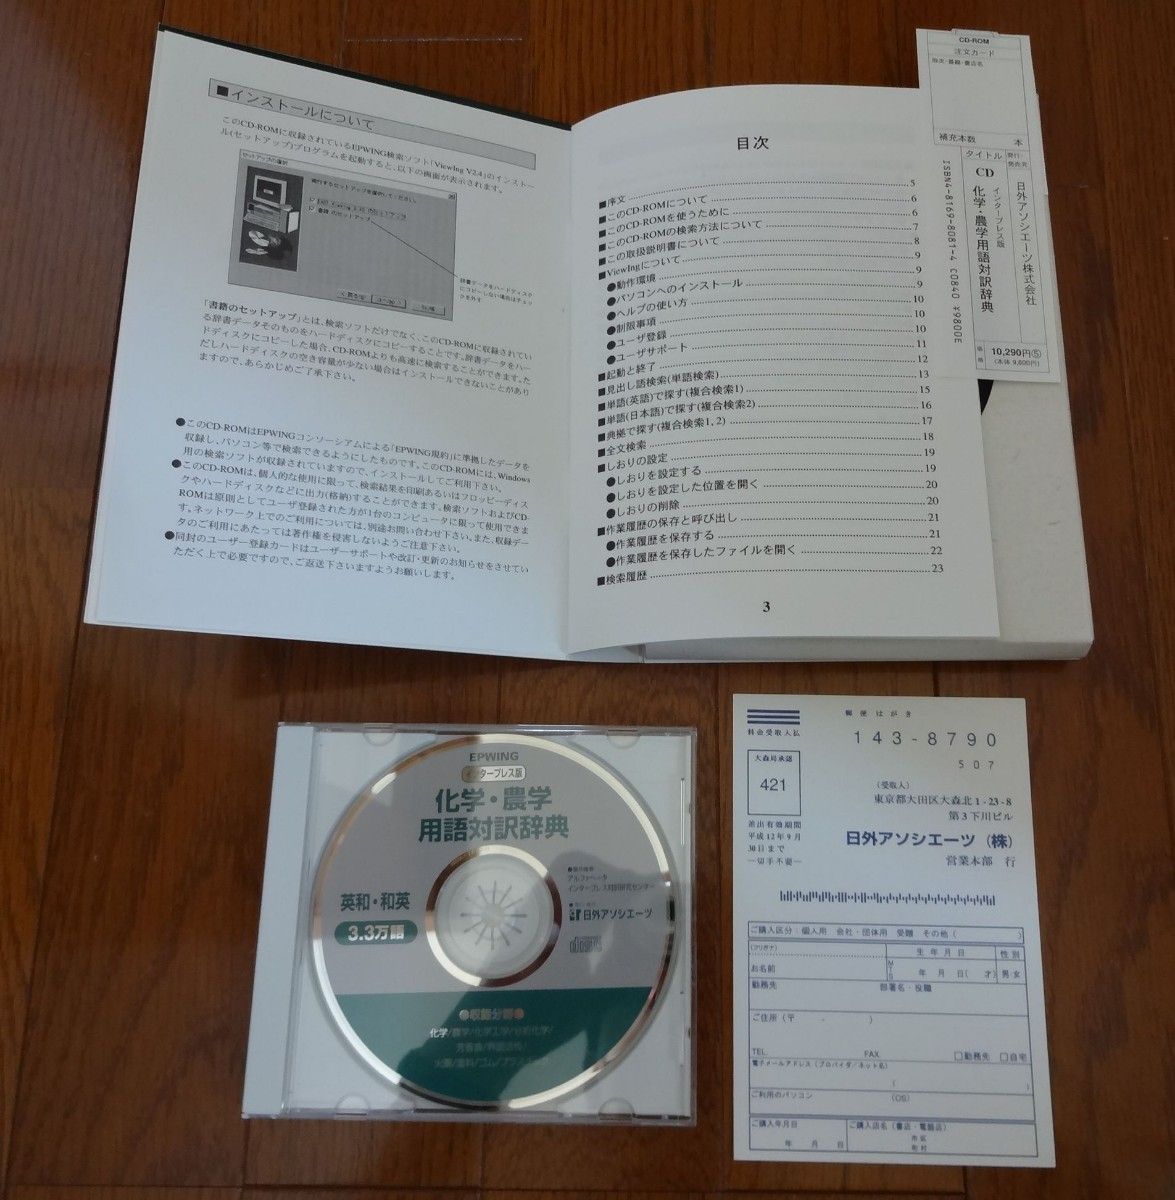 化学・農学用語対訳辞典 CD-ROM 版